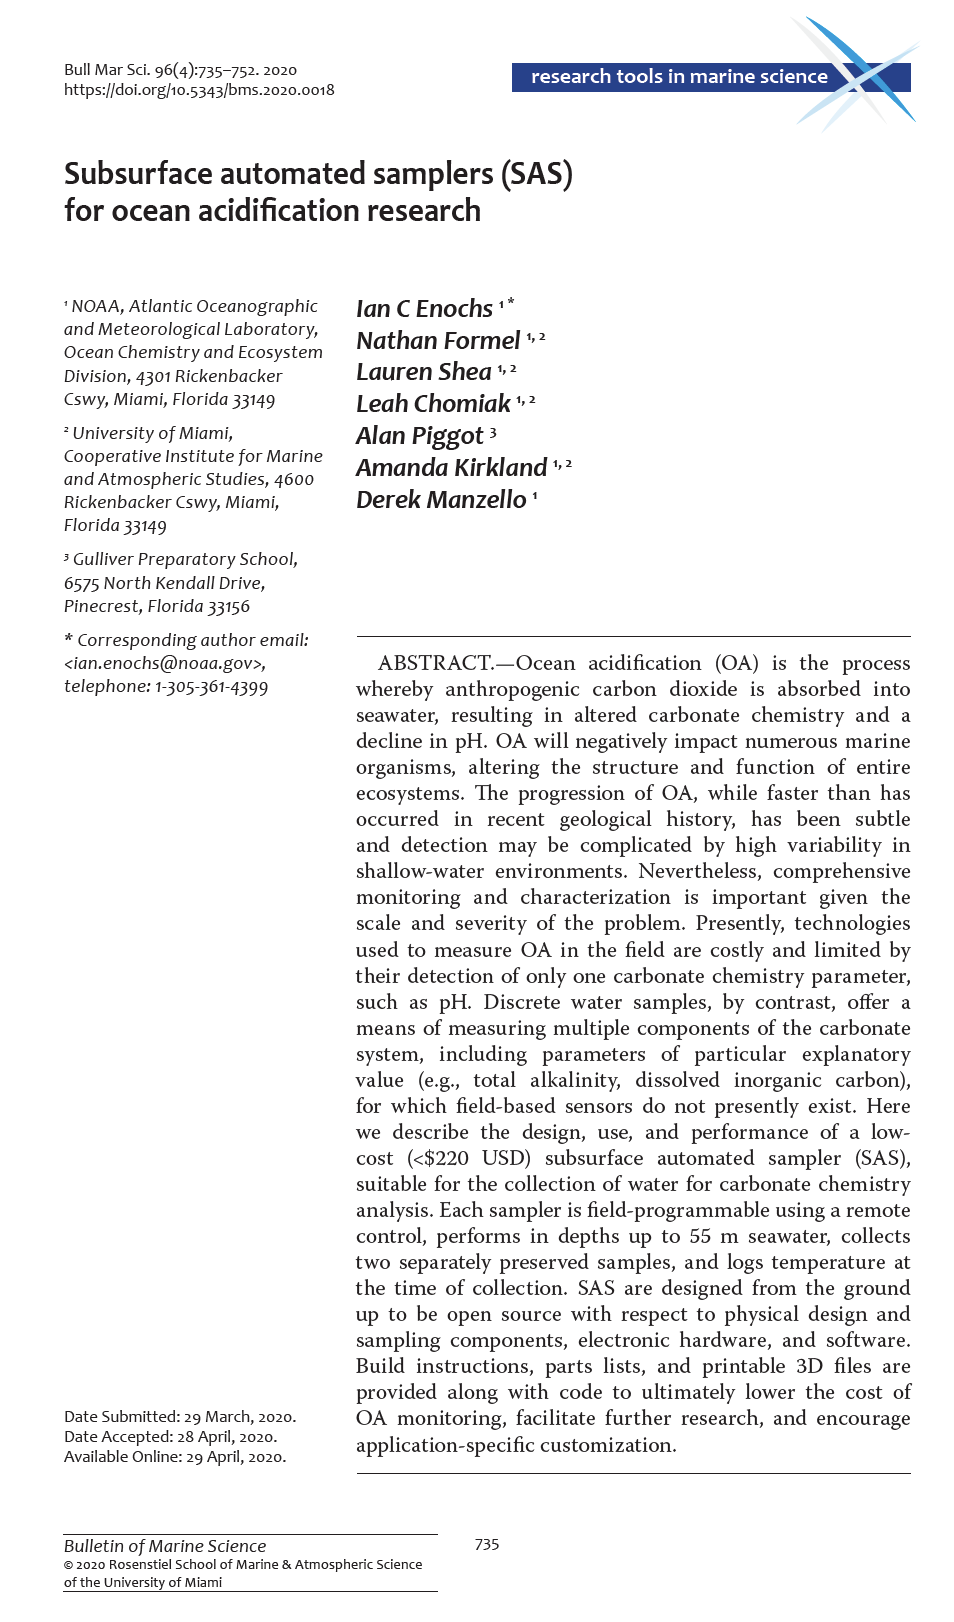 ENOCHS, I.C., N. FORMEL, L. SHEA, L. CHOMIAK, A. Piggot, A. KIRKLAND, y D. MANZELLO. Muestreadores automatizados de subsuelo (SAS) para la investigación de la acidificación del océano. Boletín de Ciencias Marinas, 96(4):735-752 (https://doi.org/10.5343/bms.2020.0018) (2020).